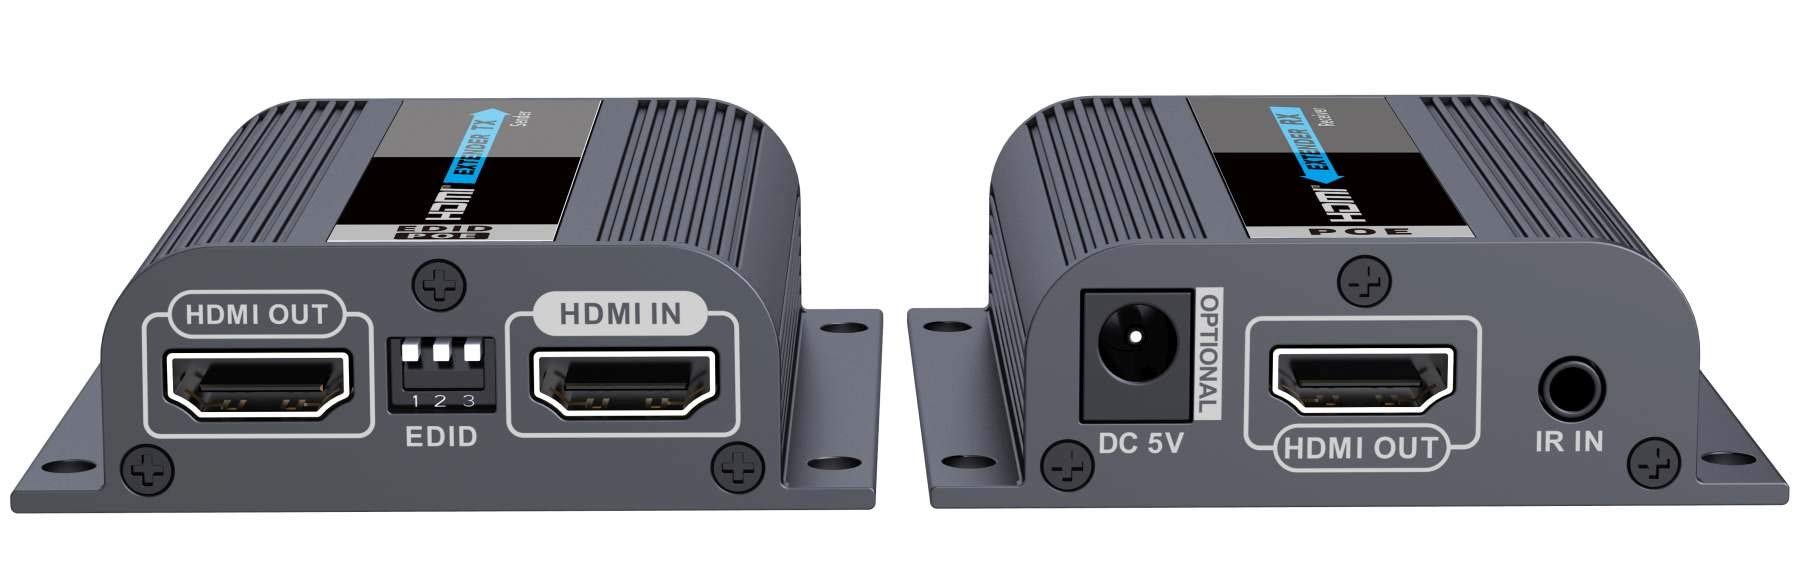 PremiumCord HDMI Extender in 50 m Entfernung über EIN Cat6 / 6a / 7-Patchkabel, EDID-Einstellungen, lokaler HDMI-Ausgang, Full HD 1080p-Videoauflösung